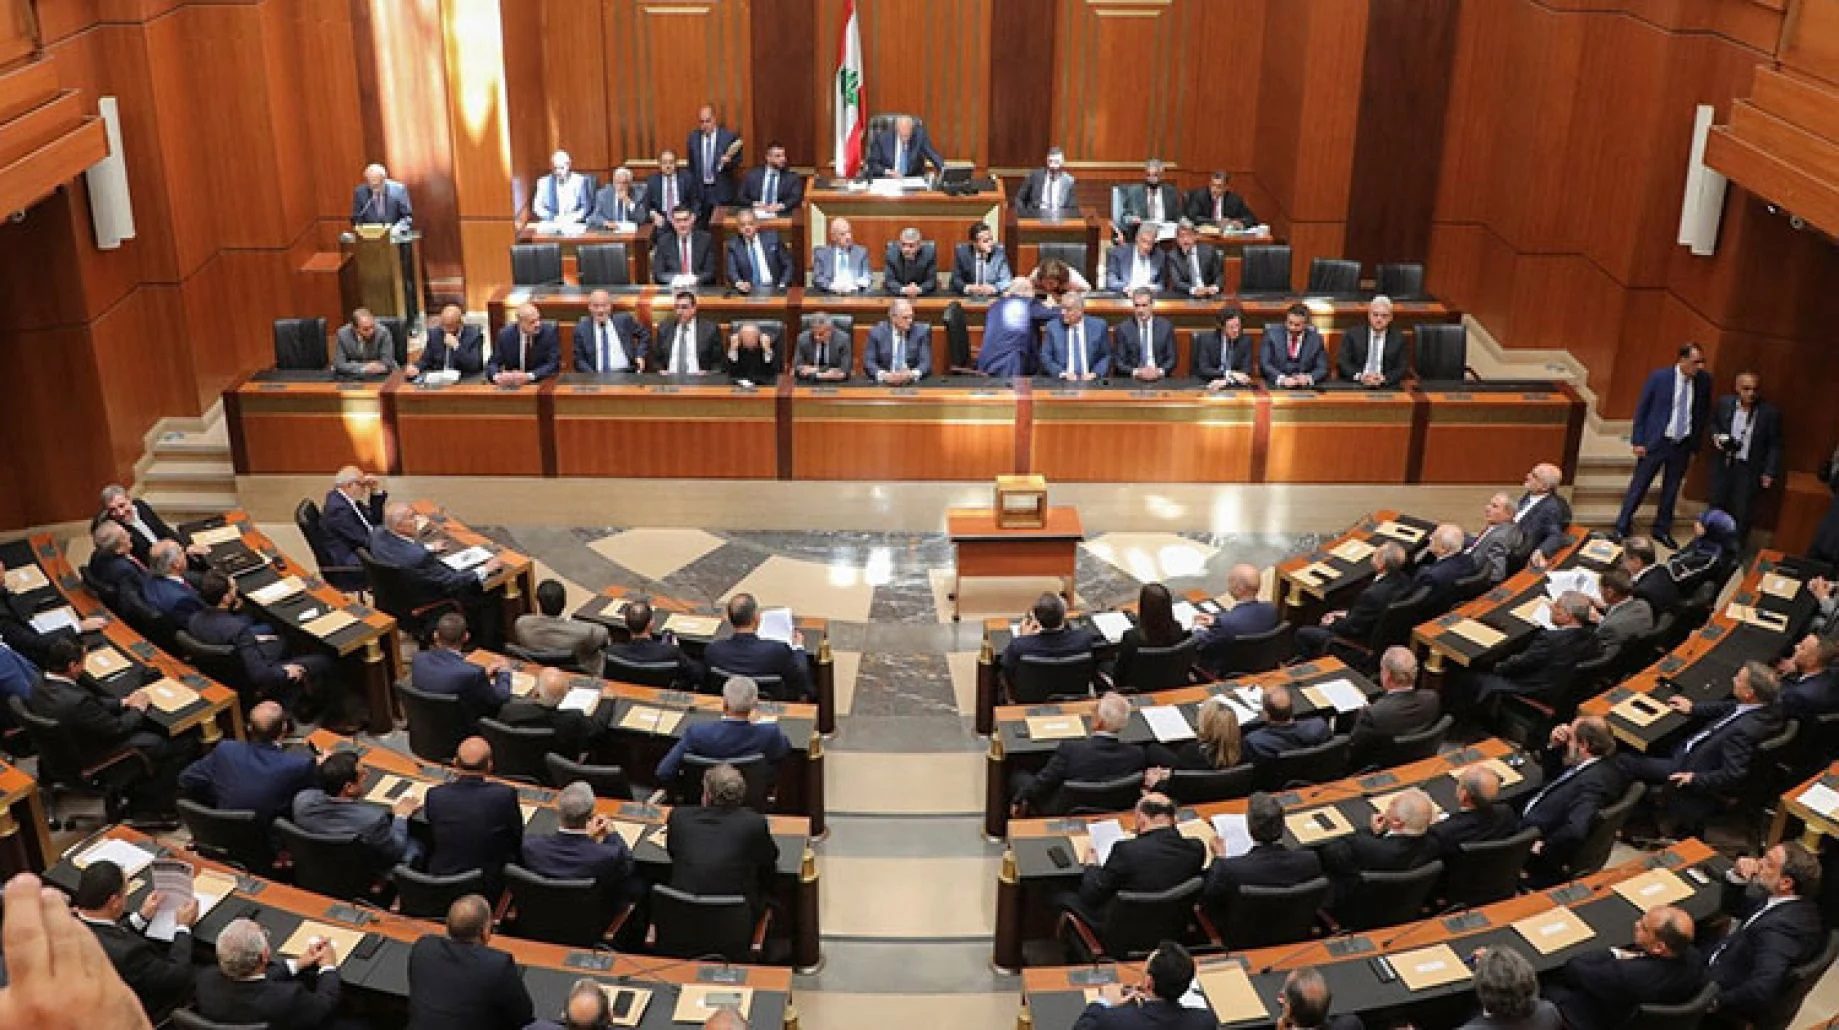 للمرة السابعة.. البرلمان اللبناني يفشل في انتخاب رئيس